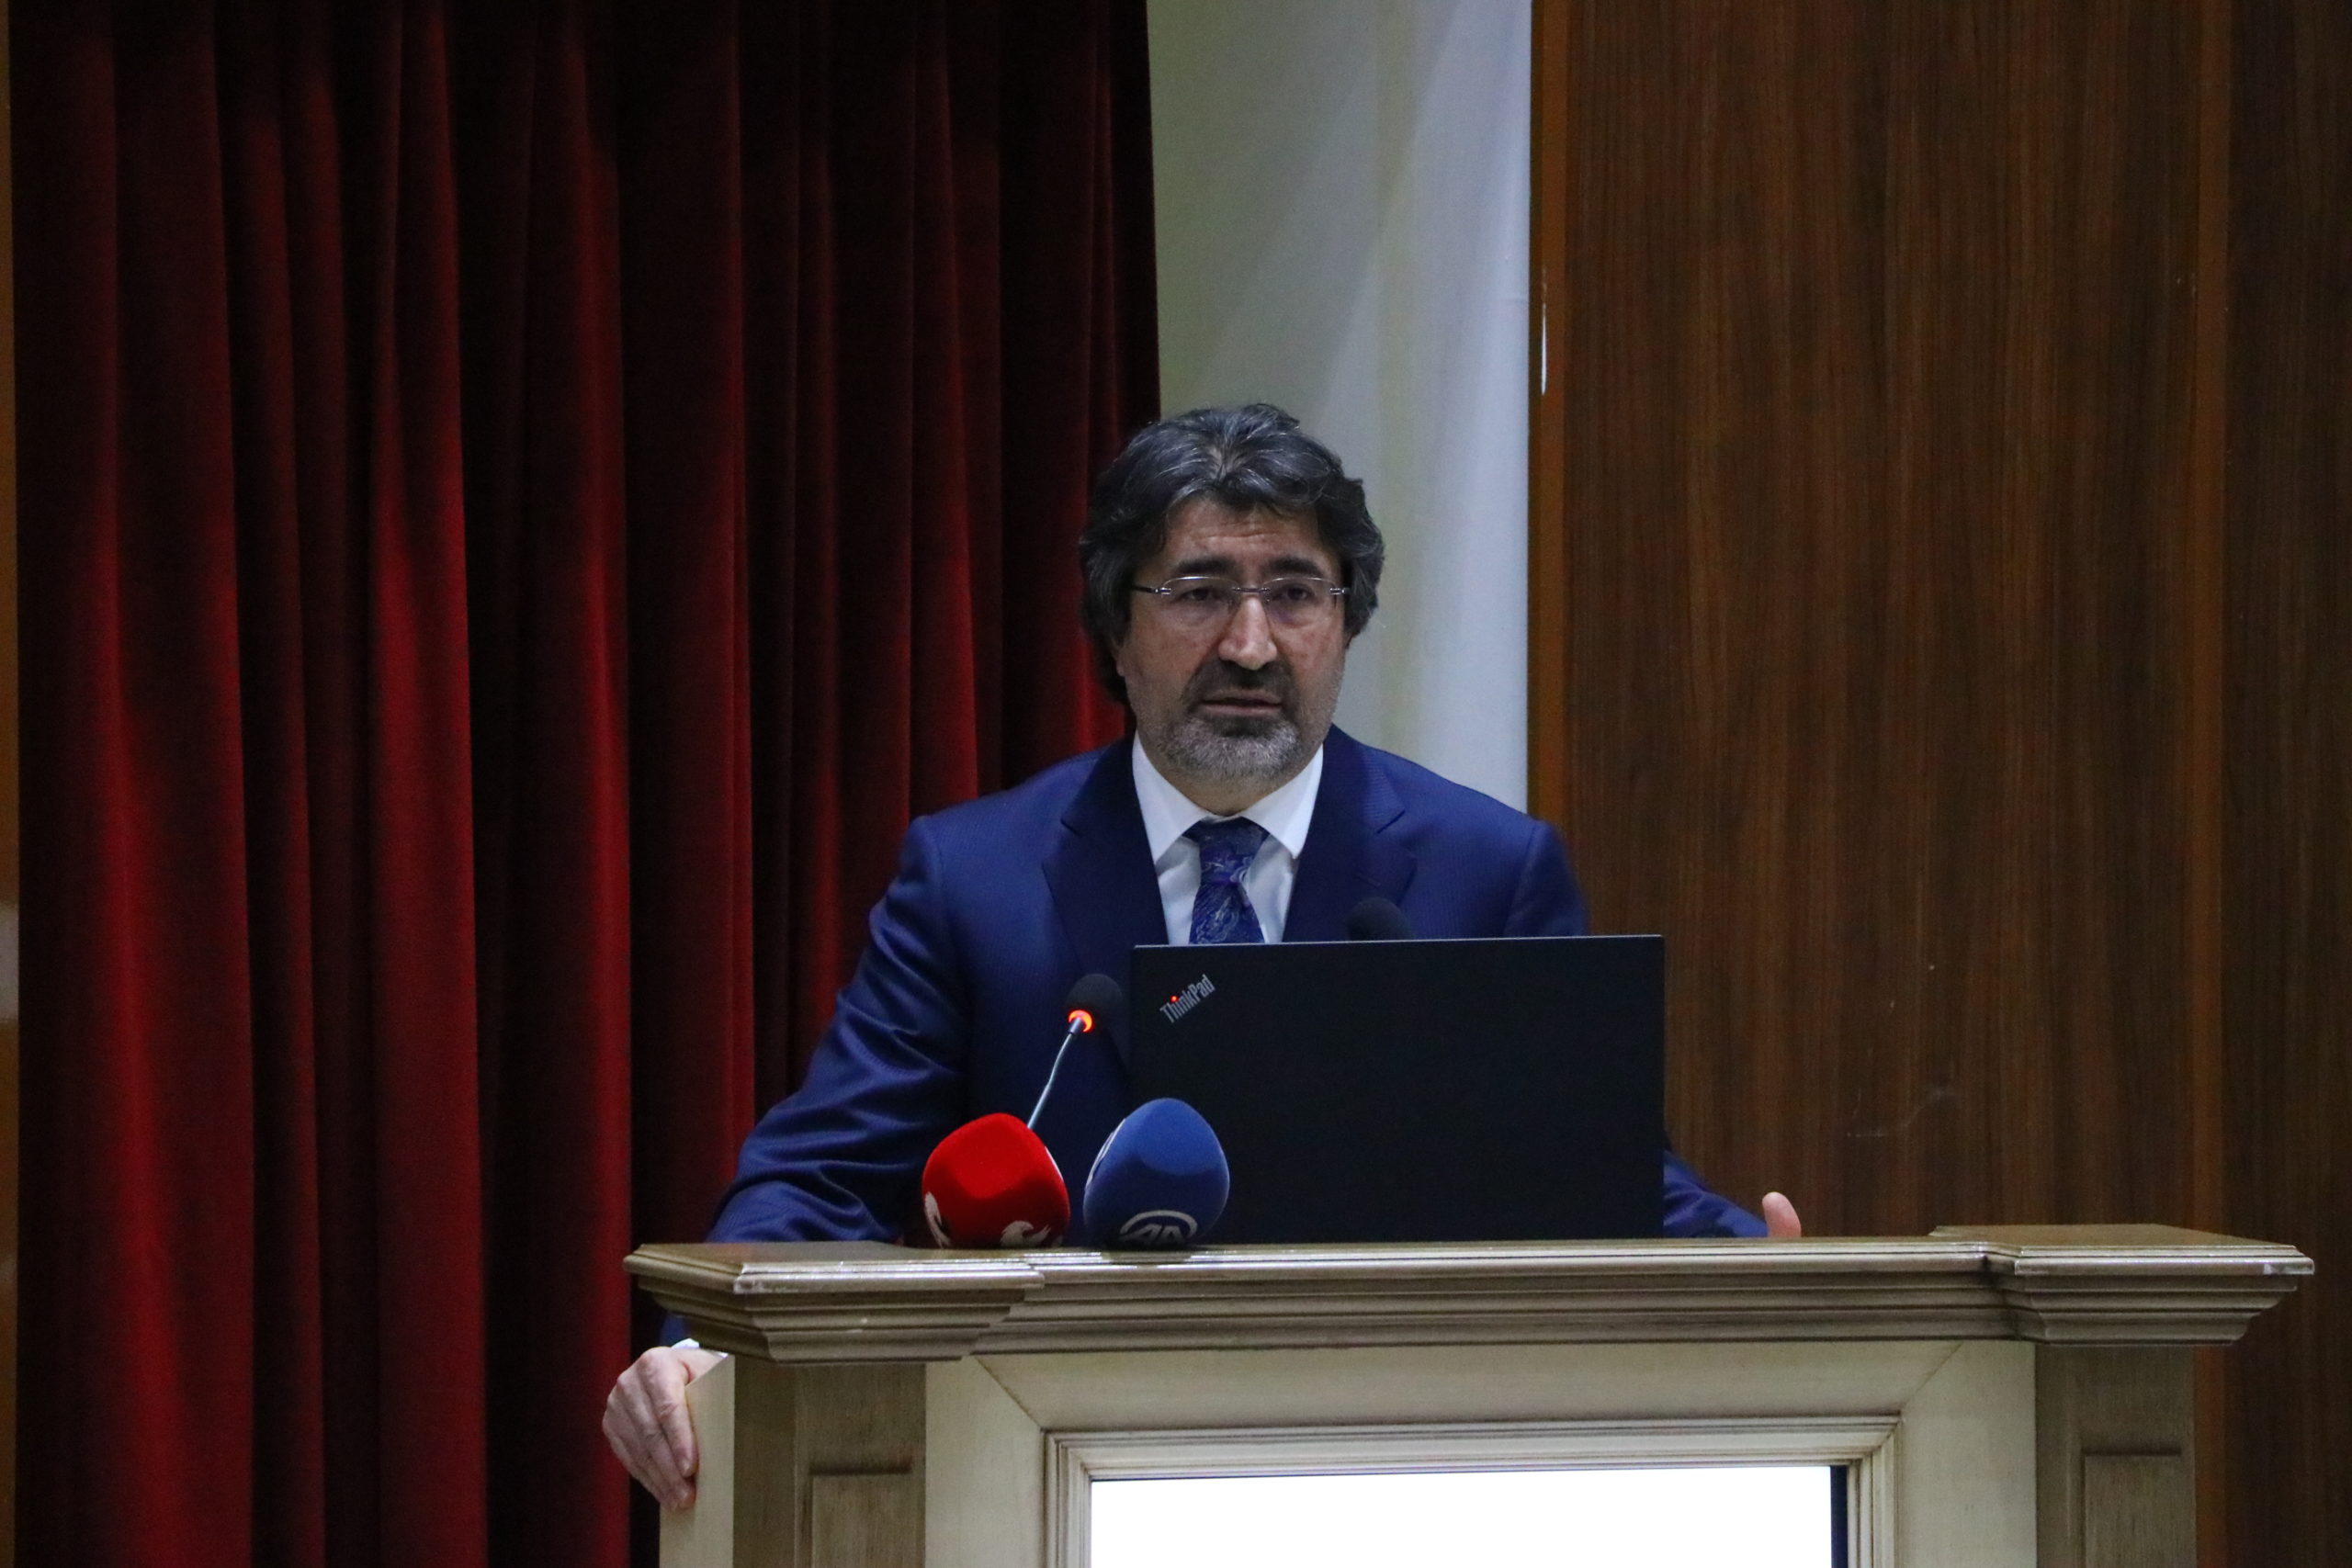 Türkiye Bankalar Birliği (TBB) Başkanı Alpaslan Çakar:”Yenilenebilir enerji projelerini kredilendireceğiz”